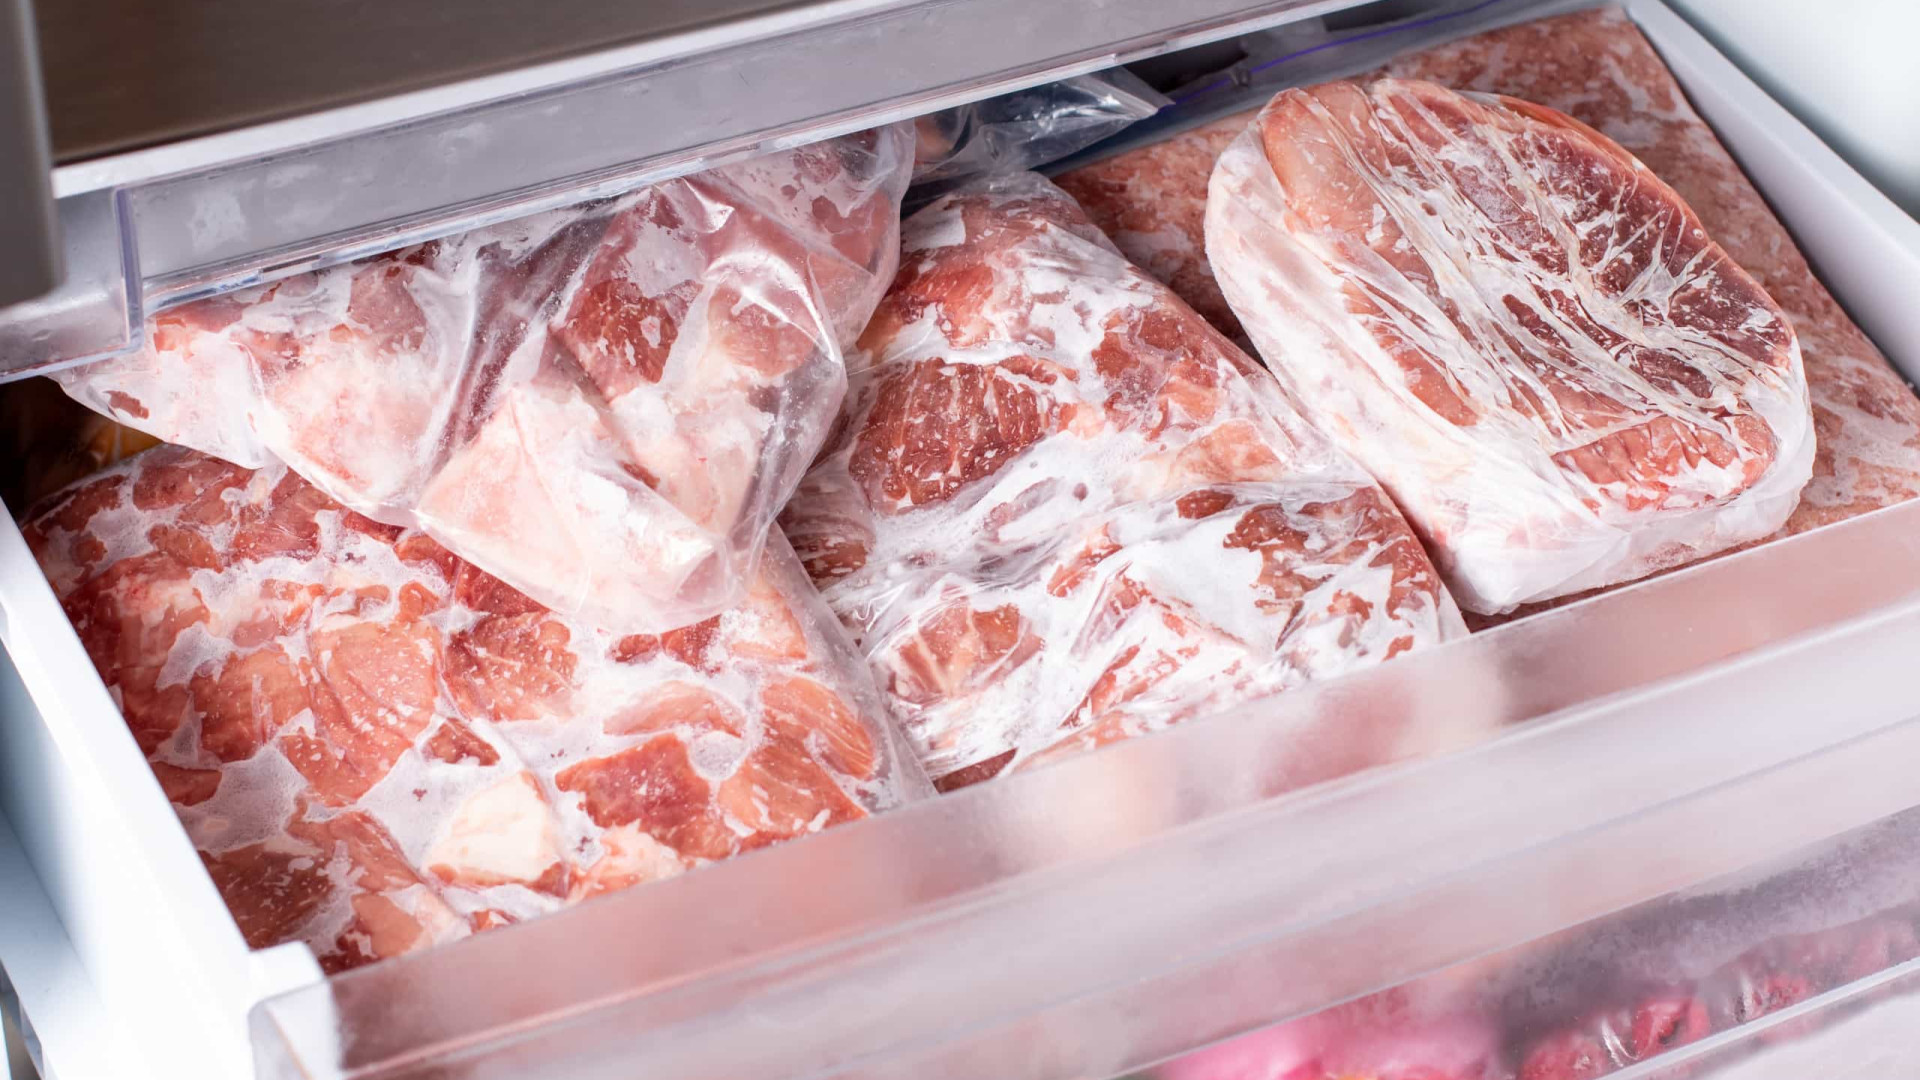 Superbactérias identificadas em 40% das carnes de supermercado em Espanha